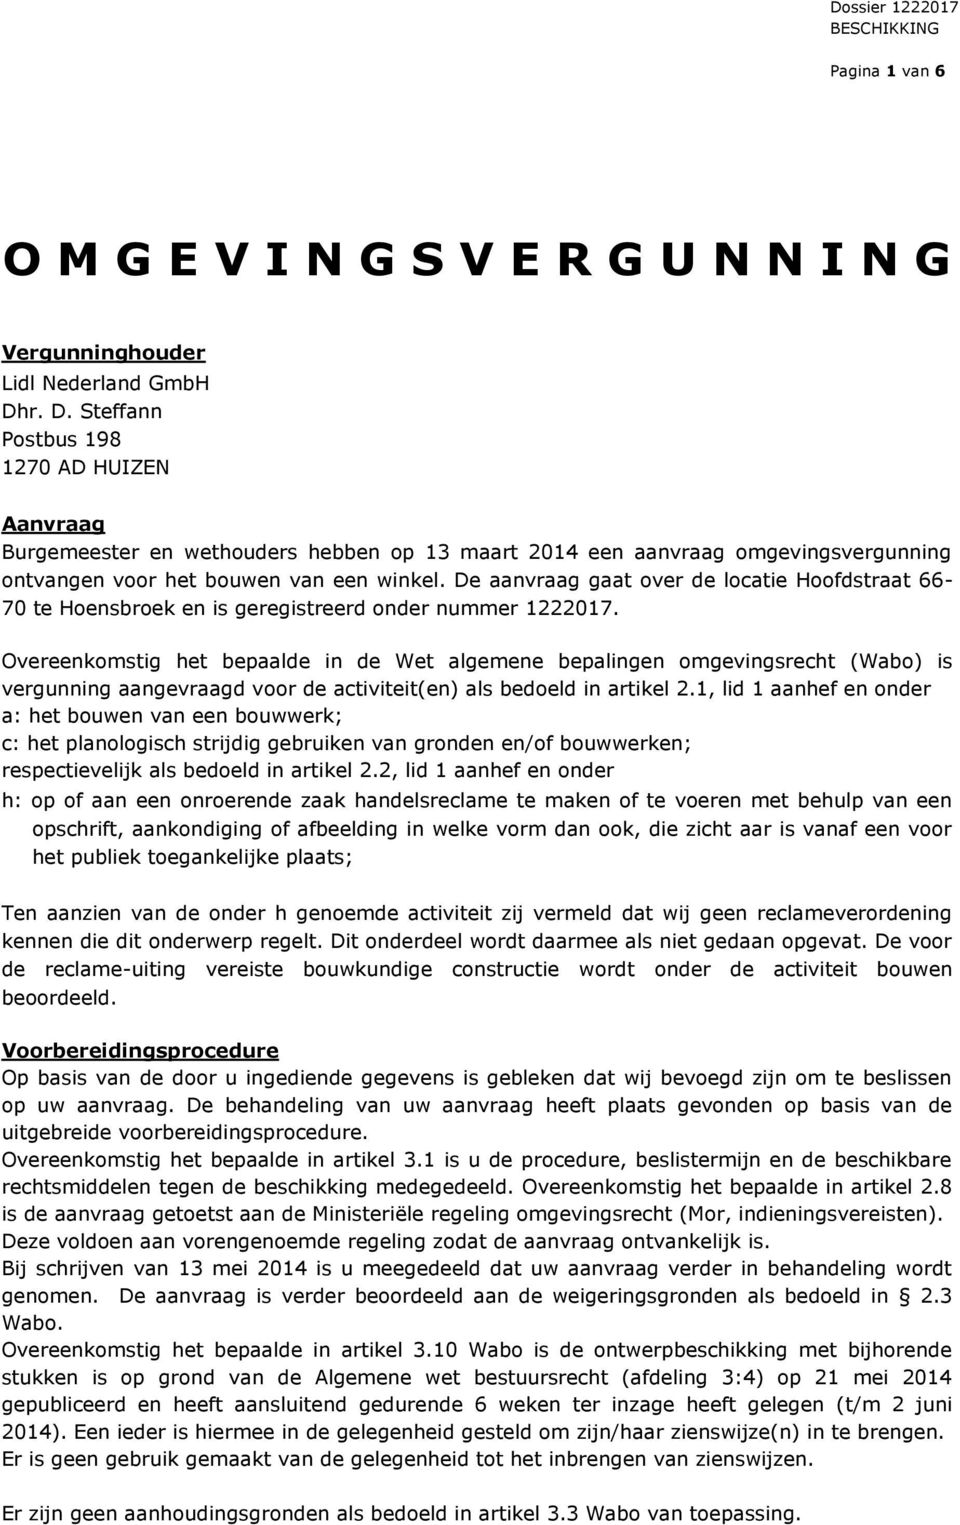 De aanvraag gaat over de locatie Hoofdstraat 66-70 te Hoensbroek en is geregistreerd onder nummer 1222017.